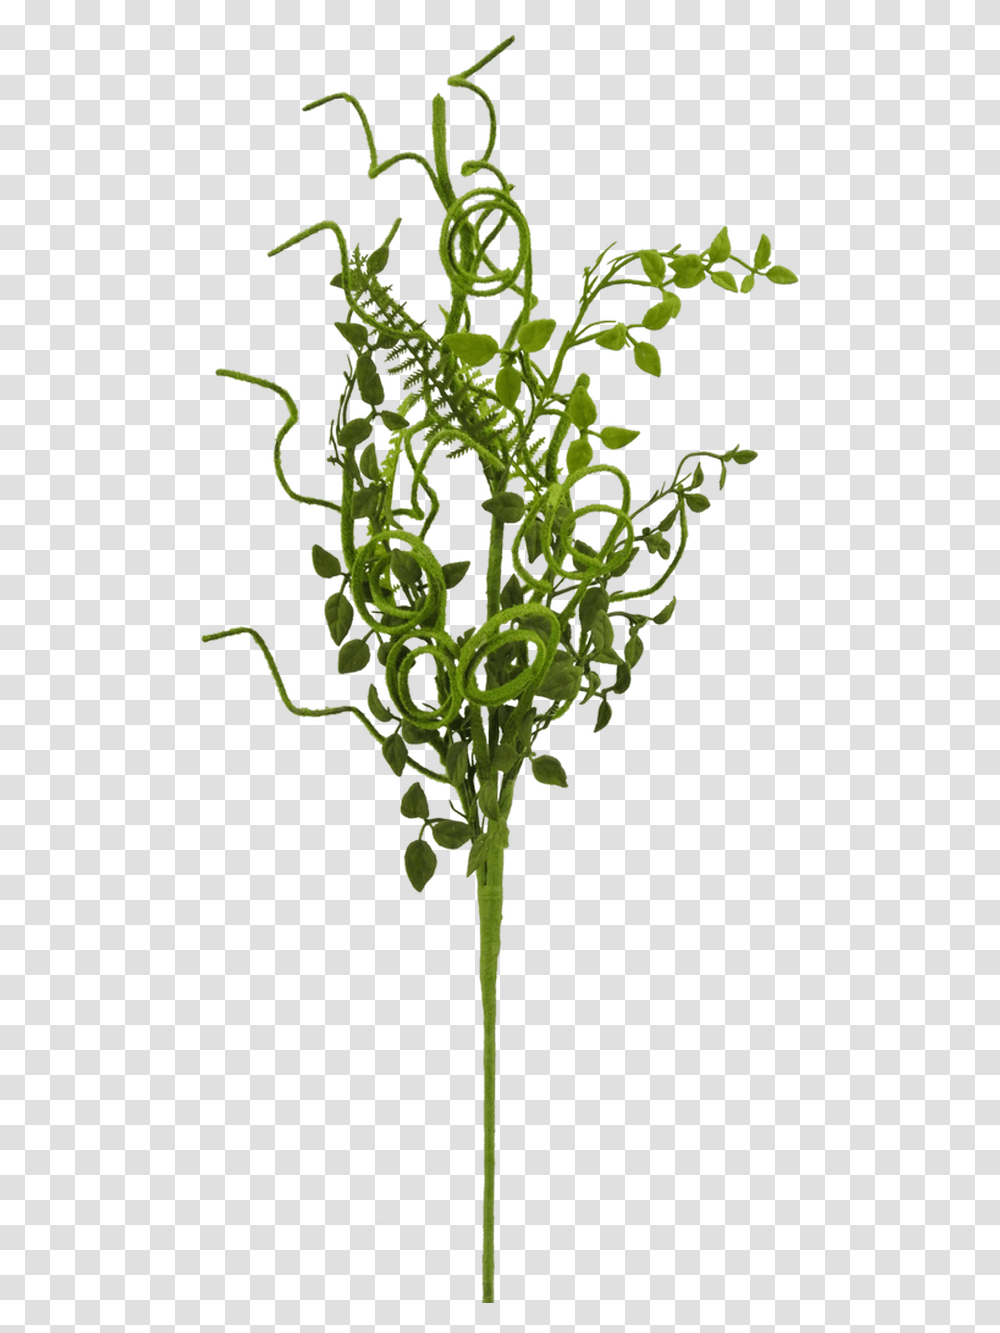 Grass, Plant, Moss, Cross Transparent Png